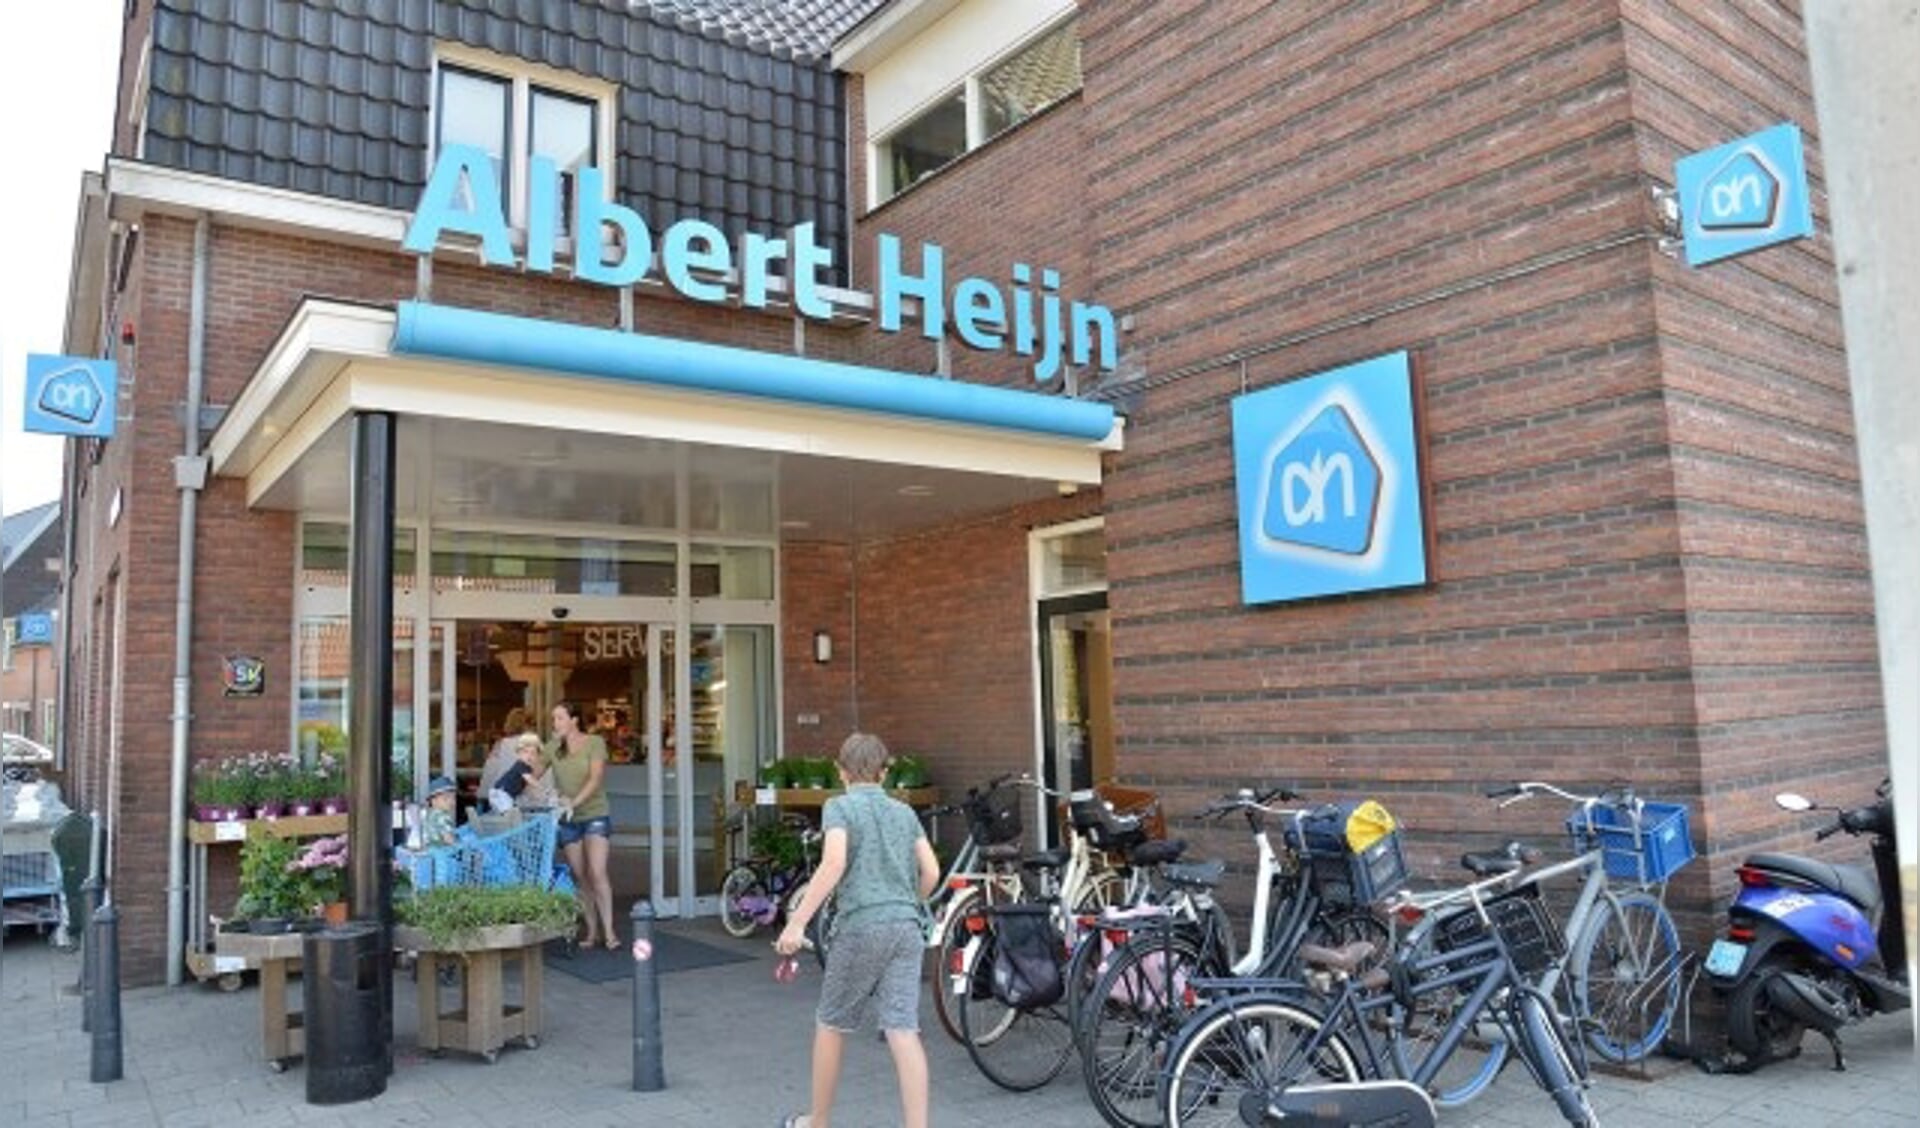 De Albert Heijn aan de Boslaan in Montfoort wil op zondag open, net als supermarkten in omliggende plaatsen. (Foto: Paul van den Dungen)